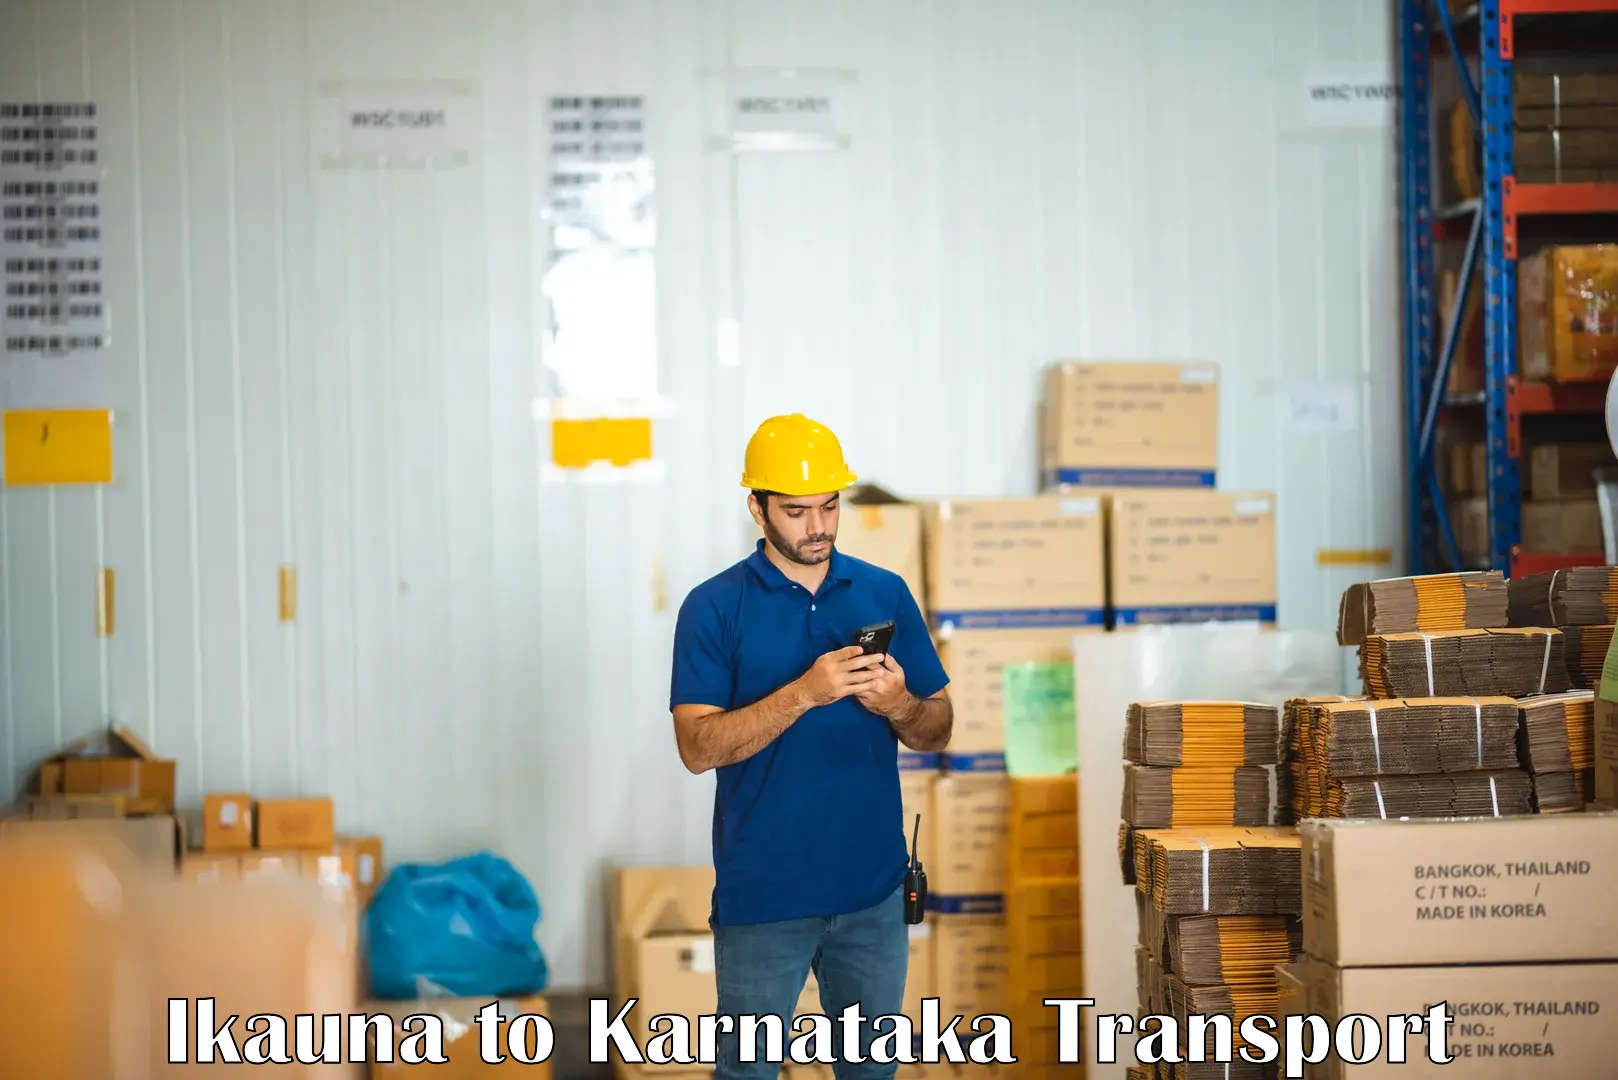 Container transport service Ikauna to Thirthahalli